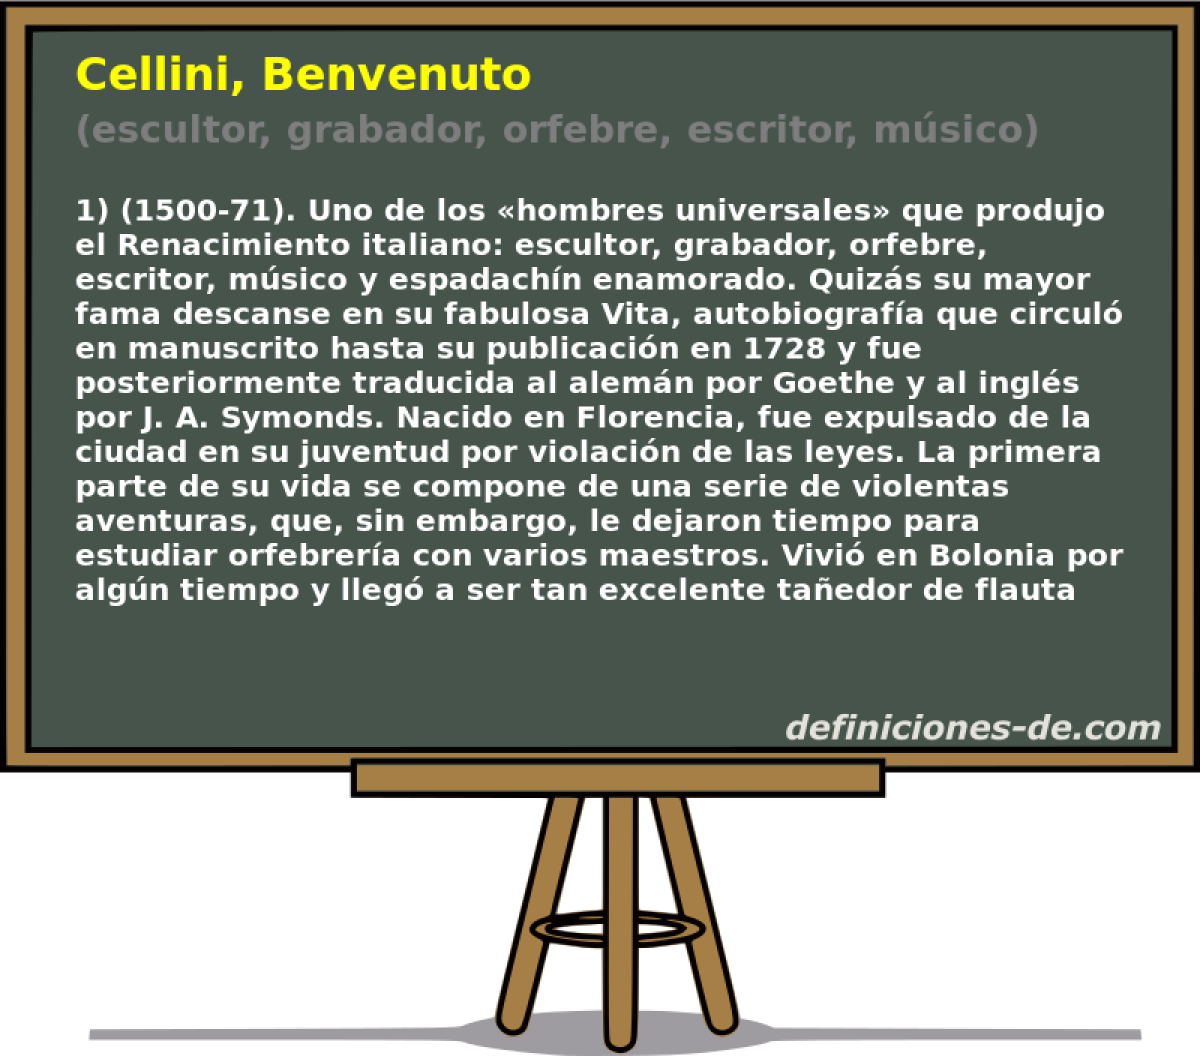 Cellini, Benvenuto (escultor, grabador, orfebre, escritor, msico)